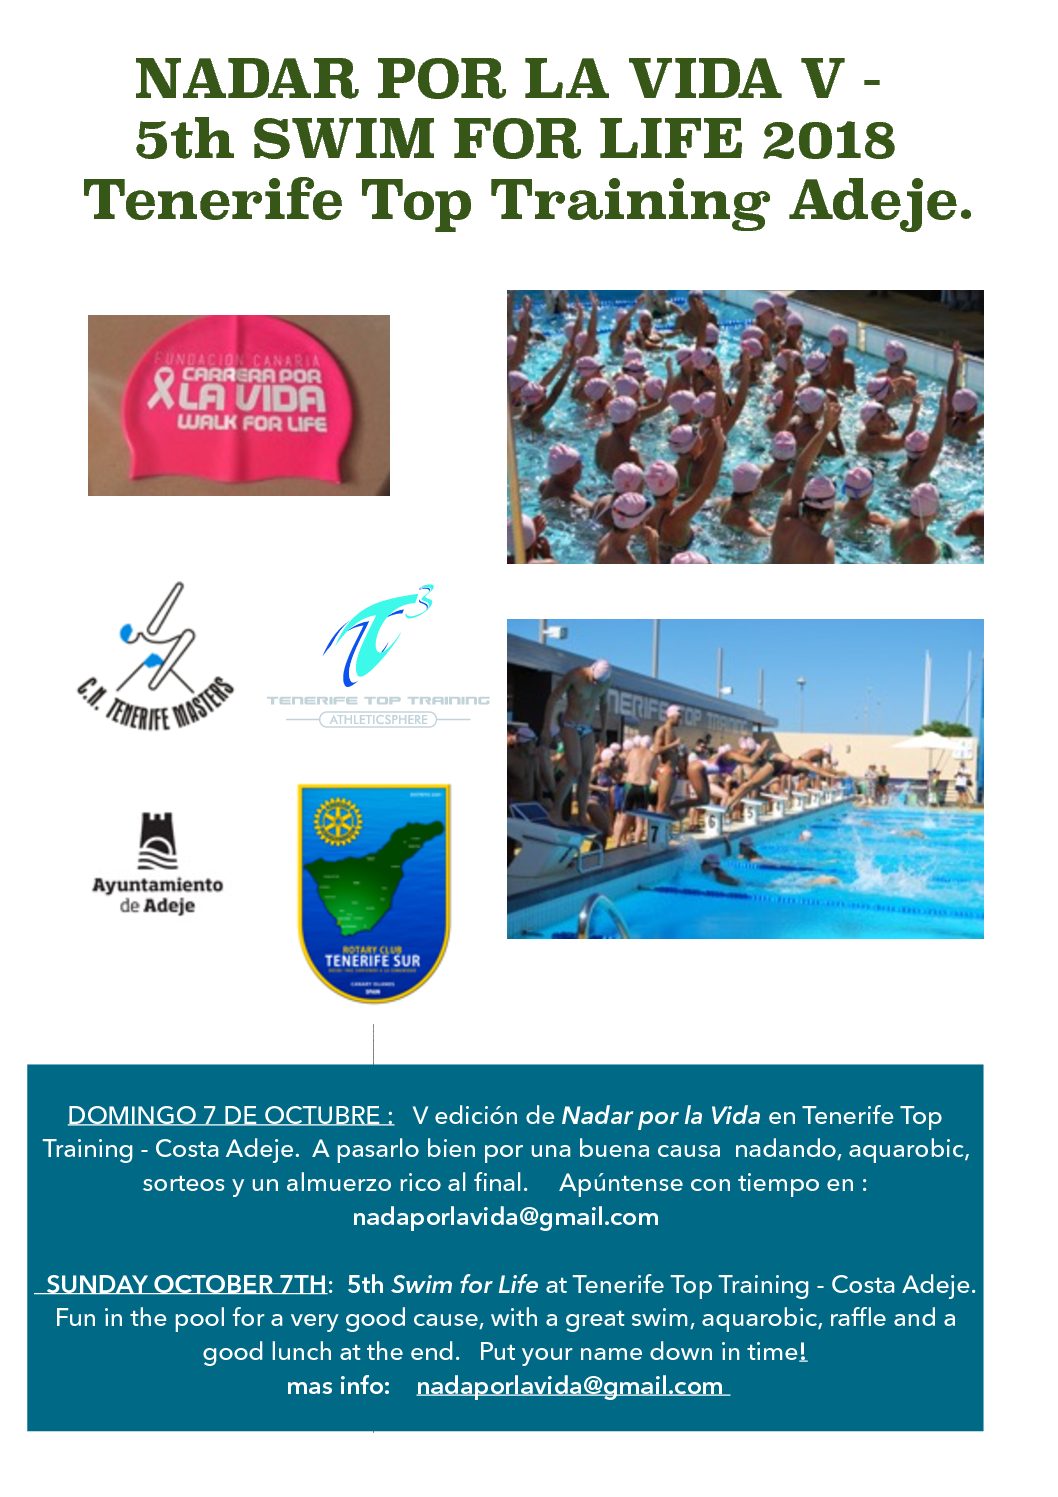 El domingo, 7 de octubre tendrá lugar la V edición de Nadar por la Vida en el T3 de Costa Adeje